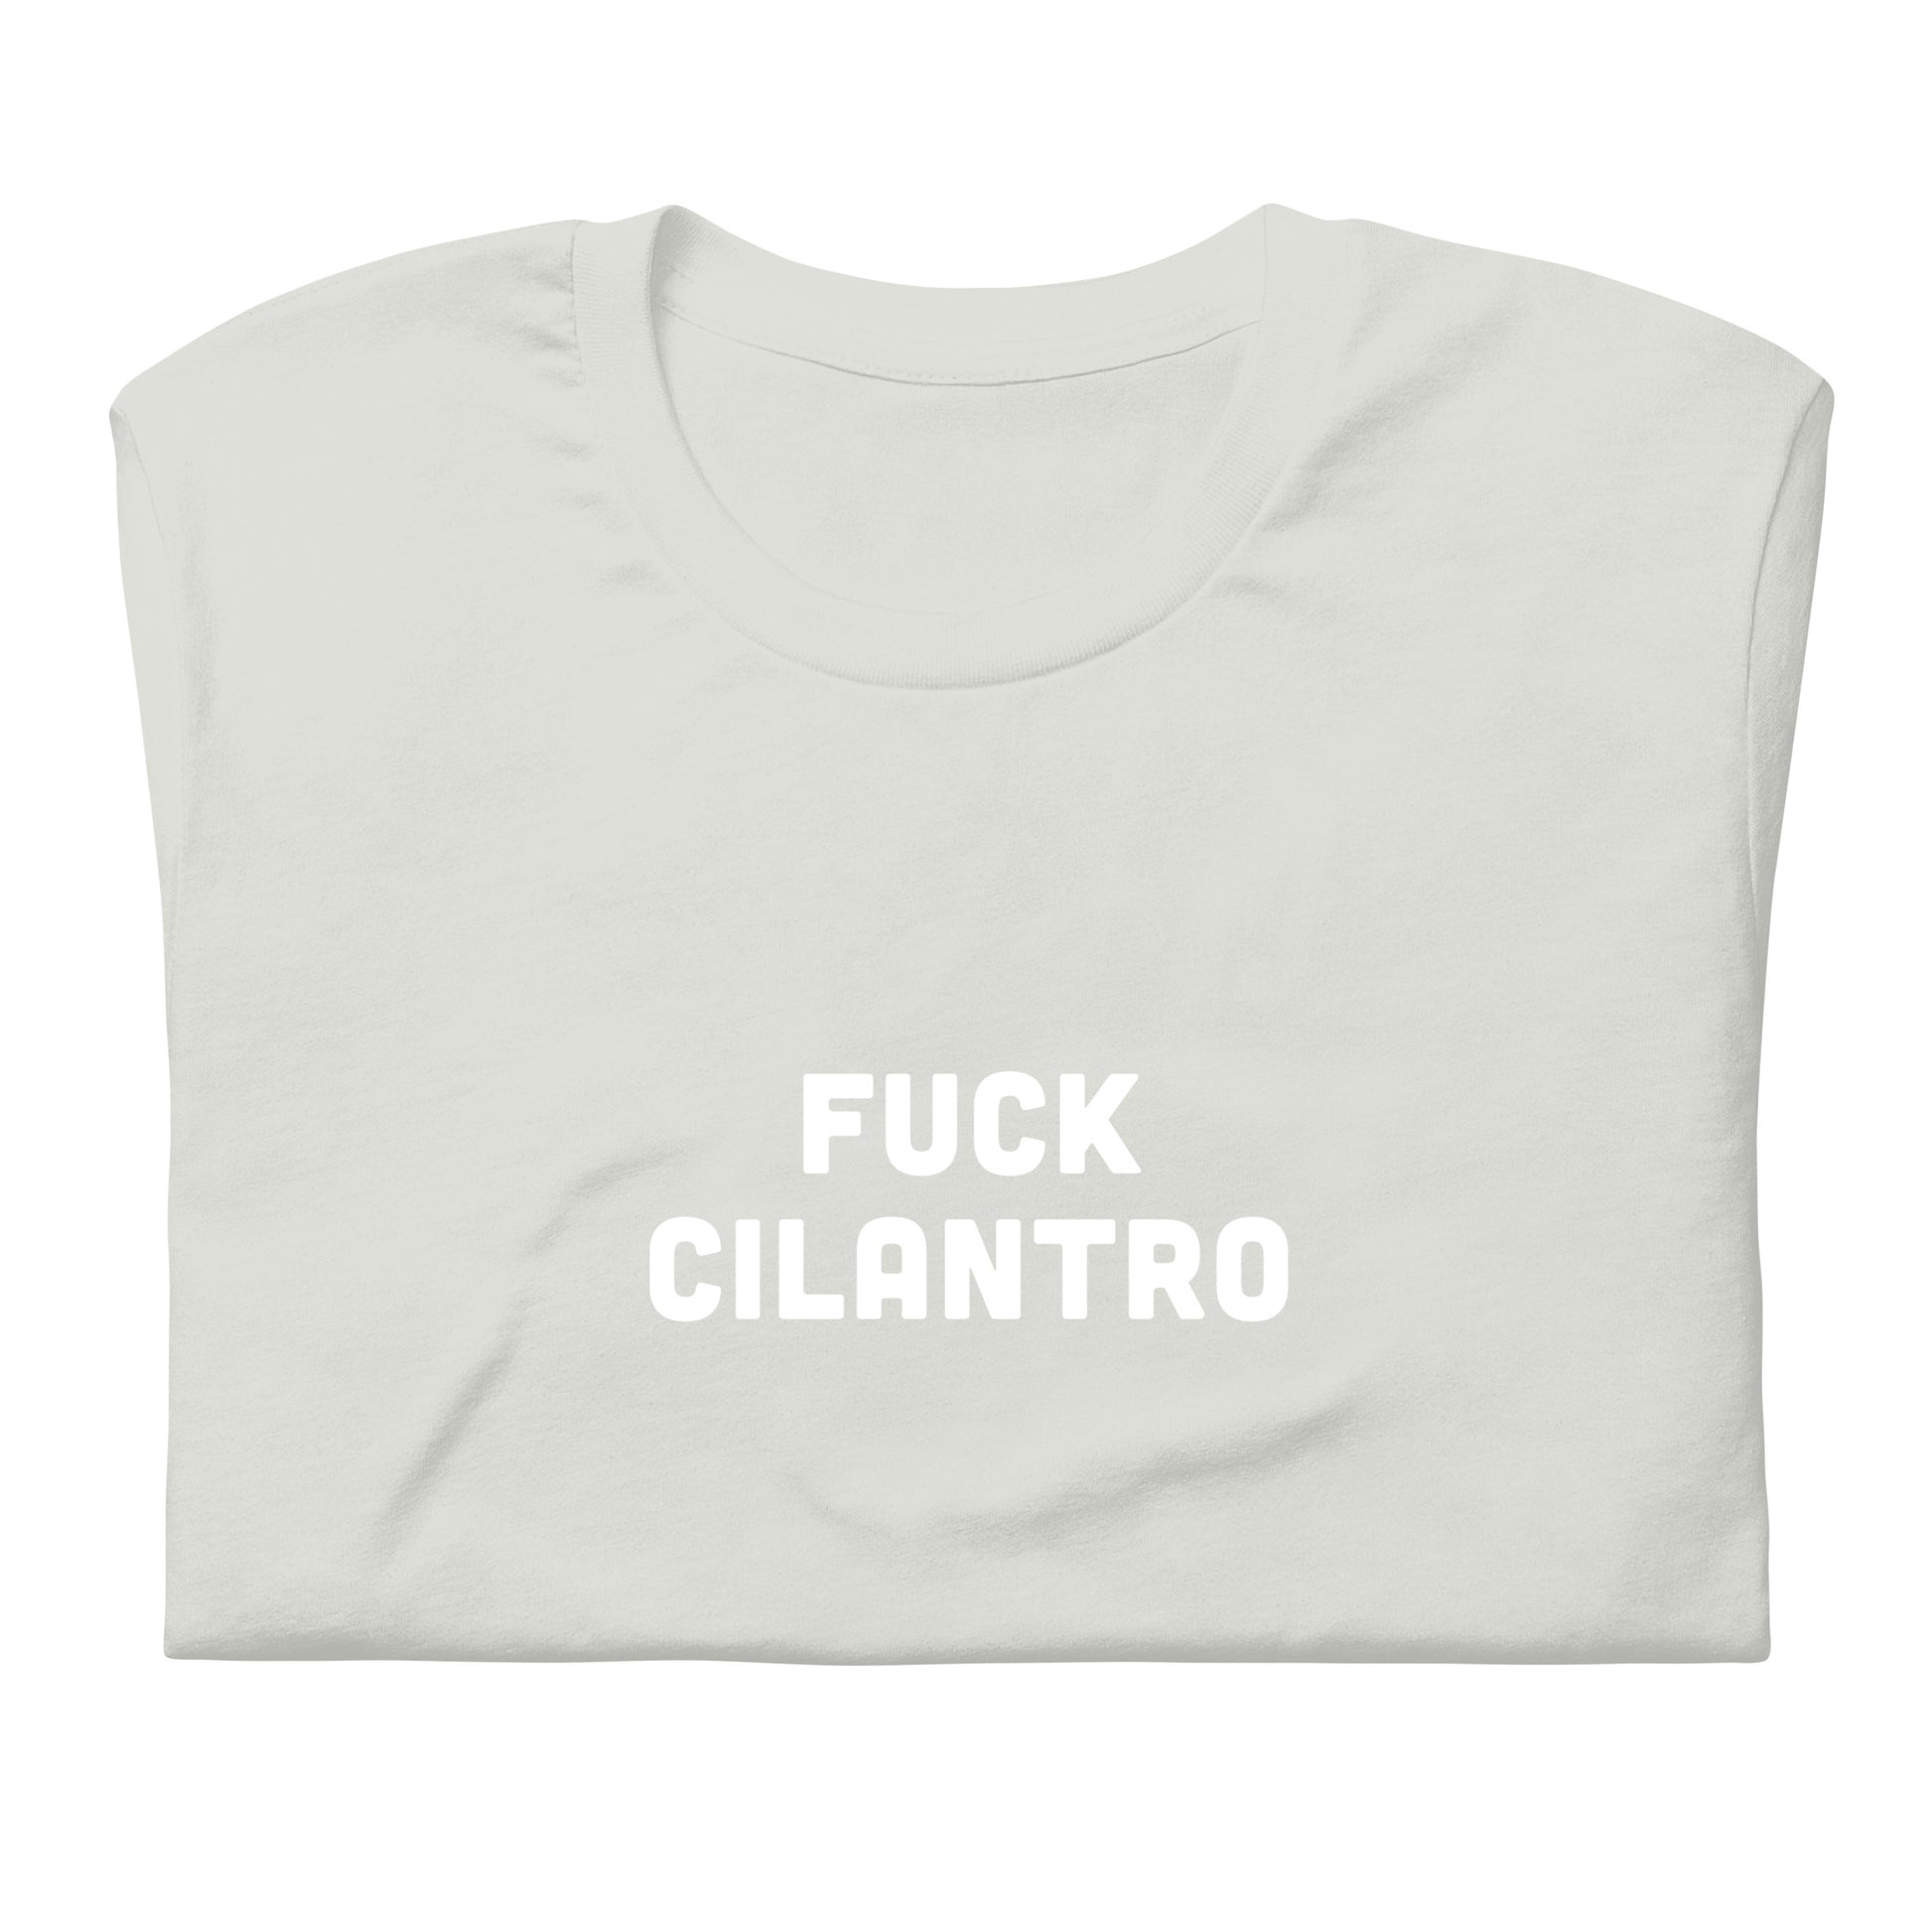 Fuck Cilantro t-shirt  2XL Color Asphalt